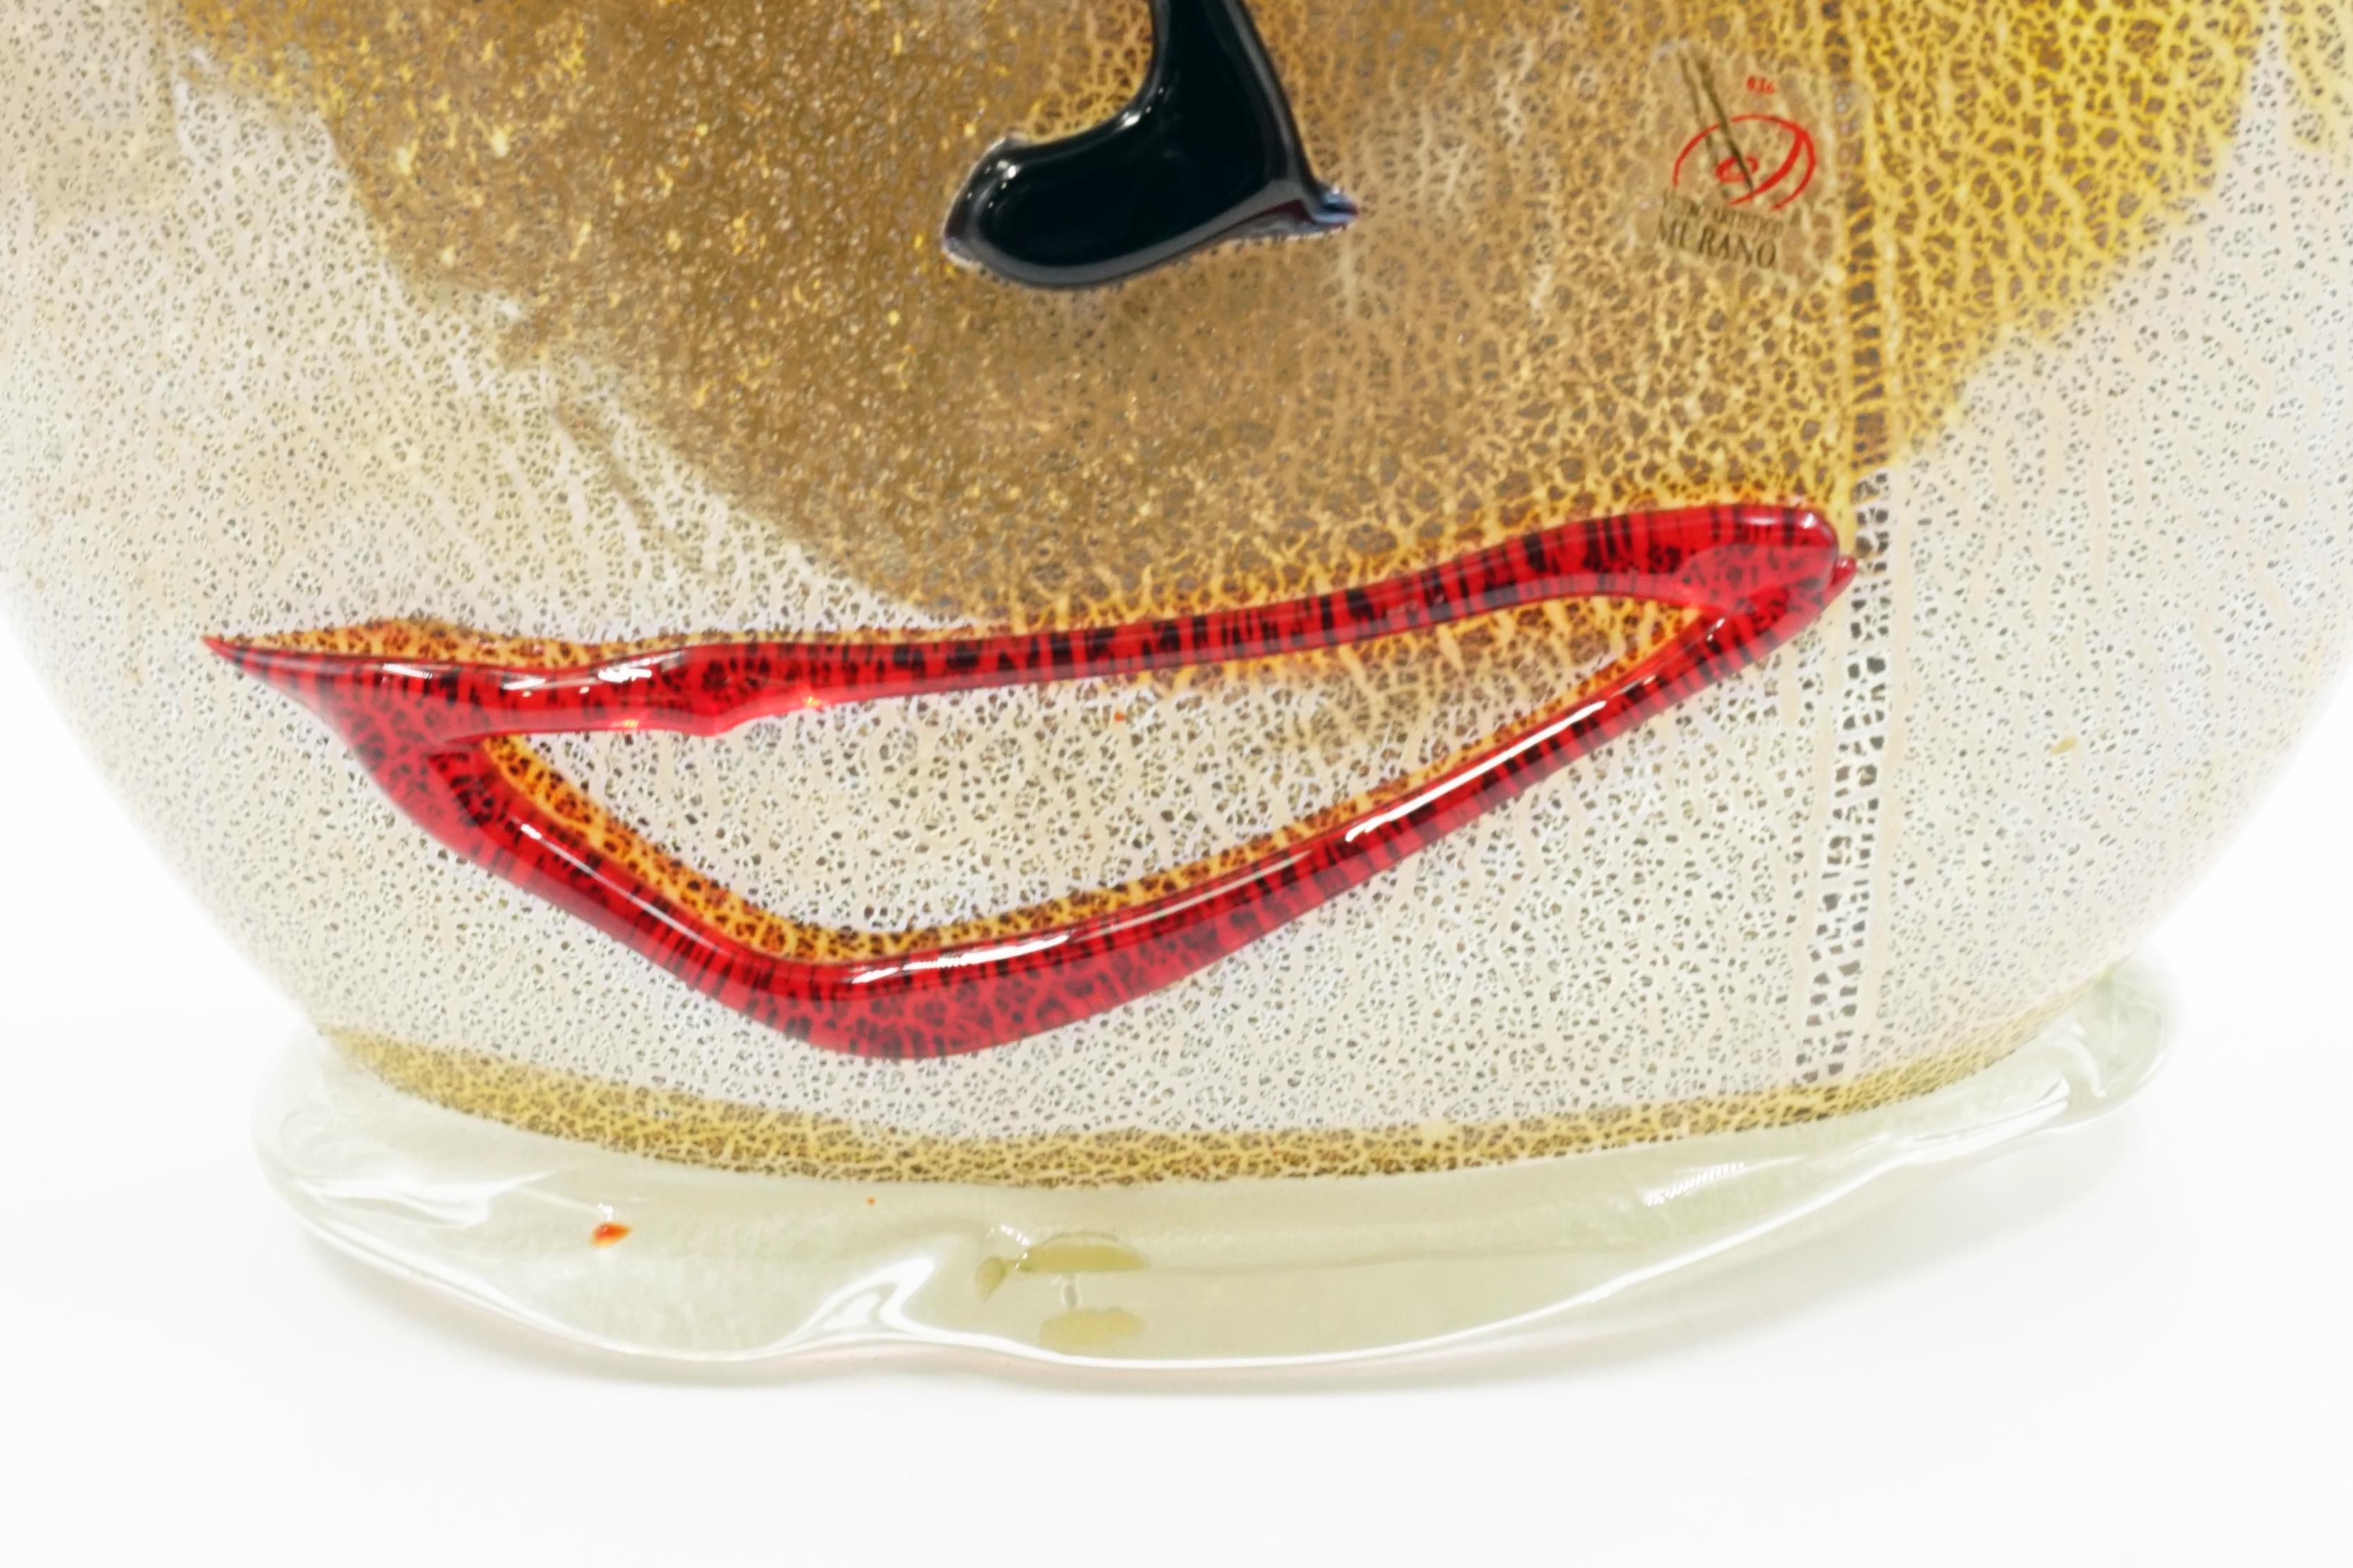 Vase en verre de Murano
Artistics attribué à Giuliano Tosi
Hommage à Pablo Picasso
Circa 1970 Origine Italie
Style du milieu du siècle
Excellent état
Maître verrier Murano
Giuliano Tosi est né à Murano en 1950 et travaille dans le monde du verre